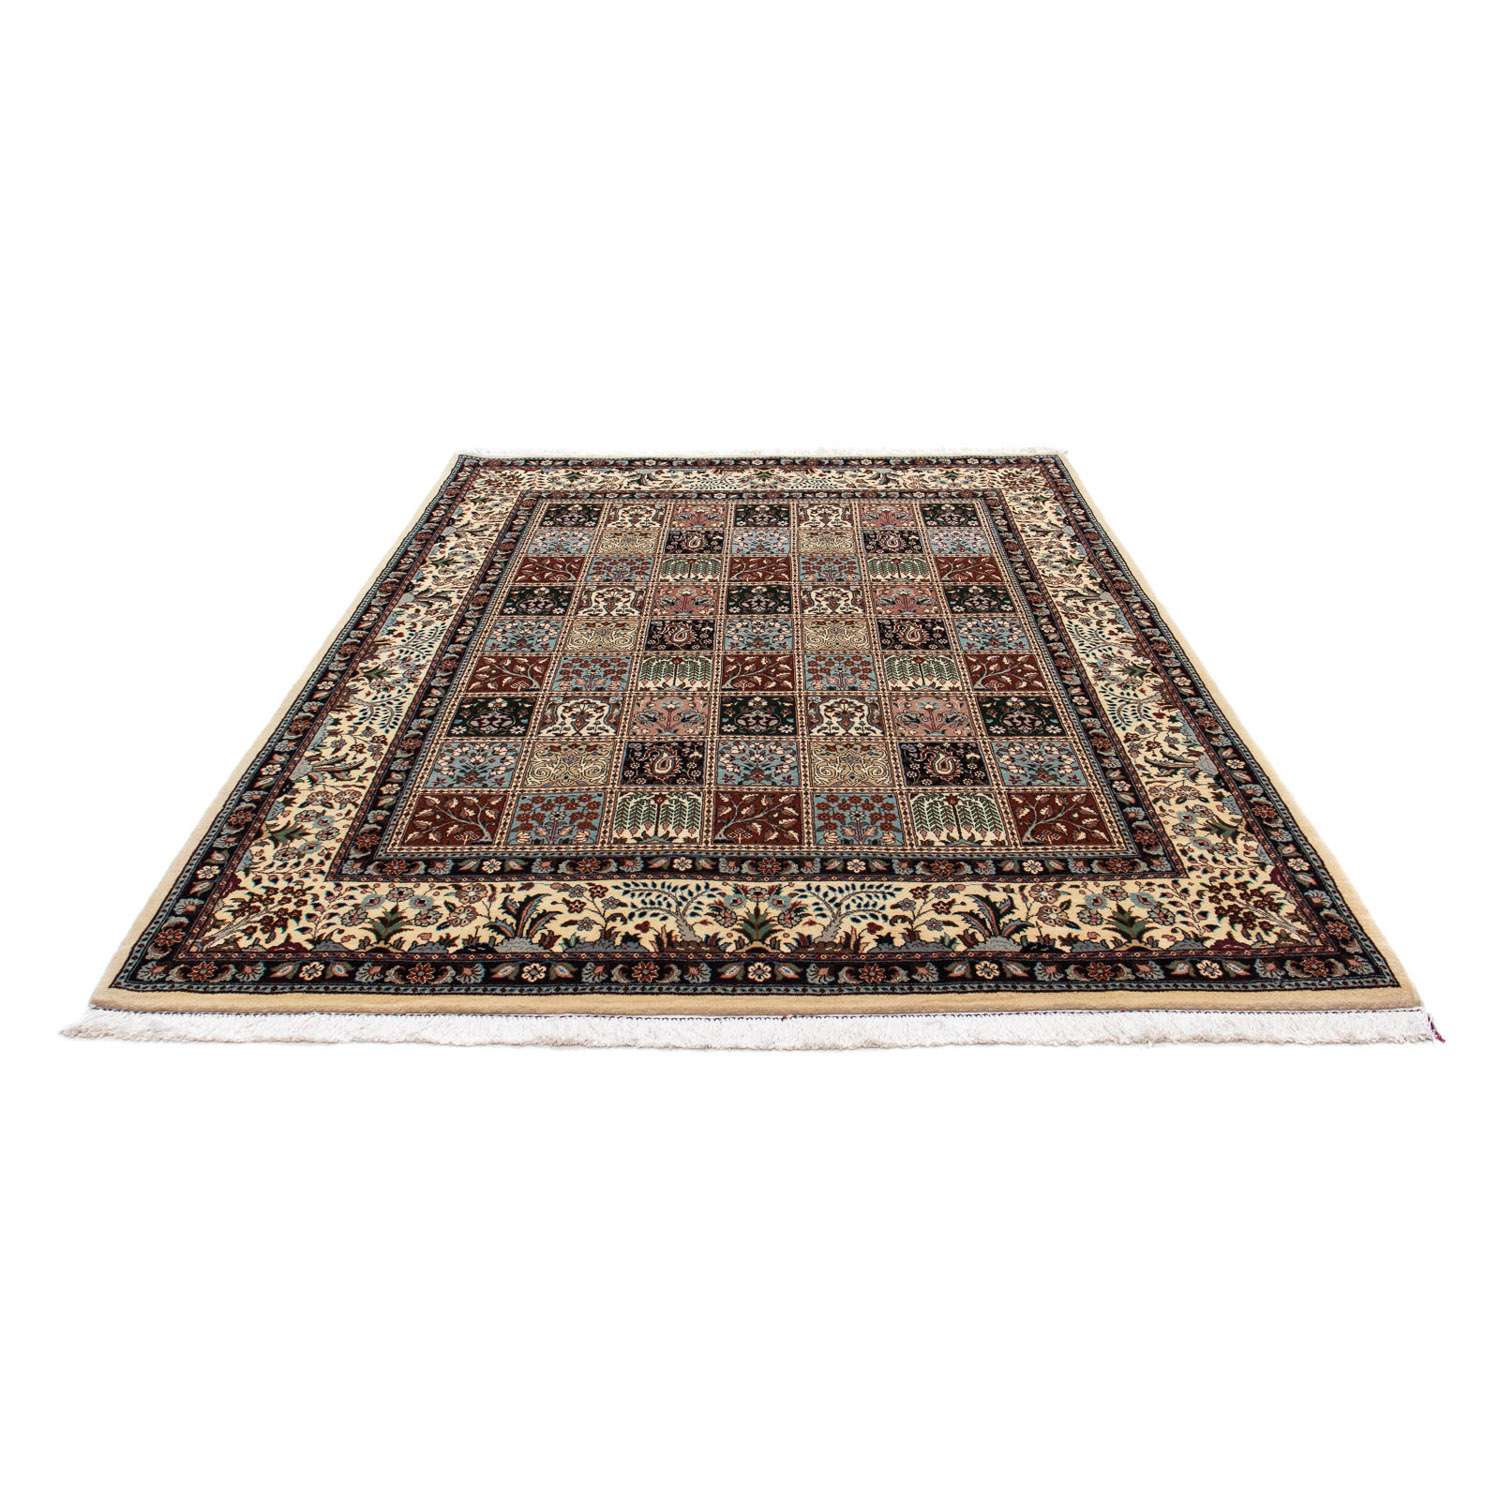 Persisk teppe - klassisk - 242 x 184 cm - flerfarget